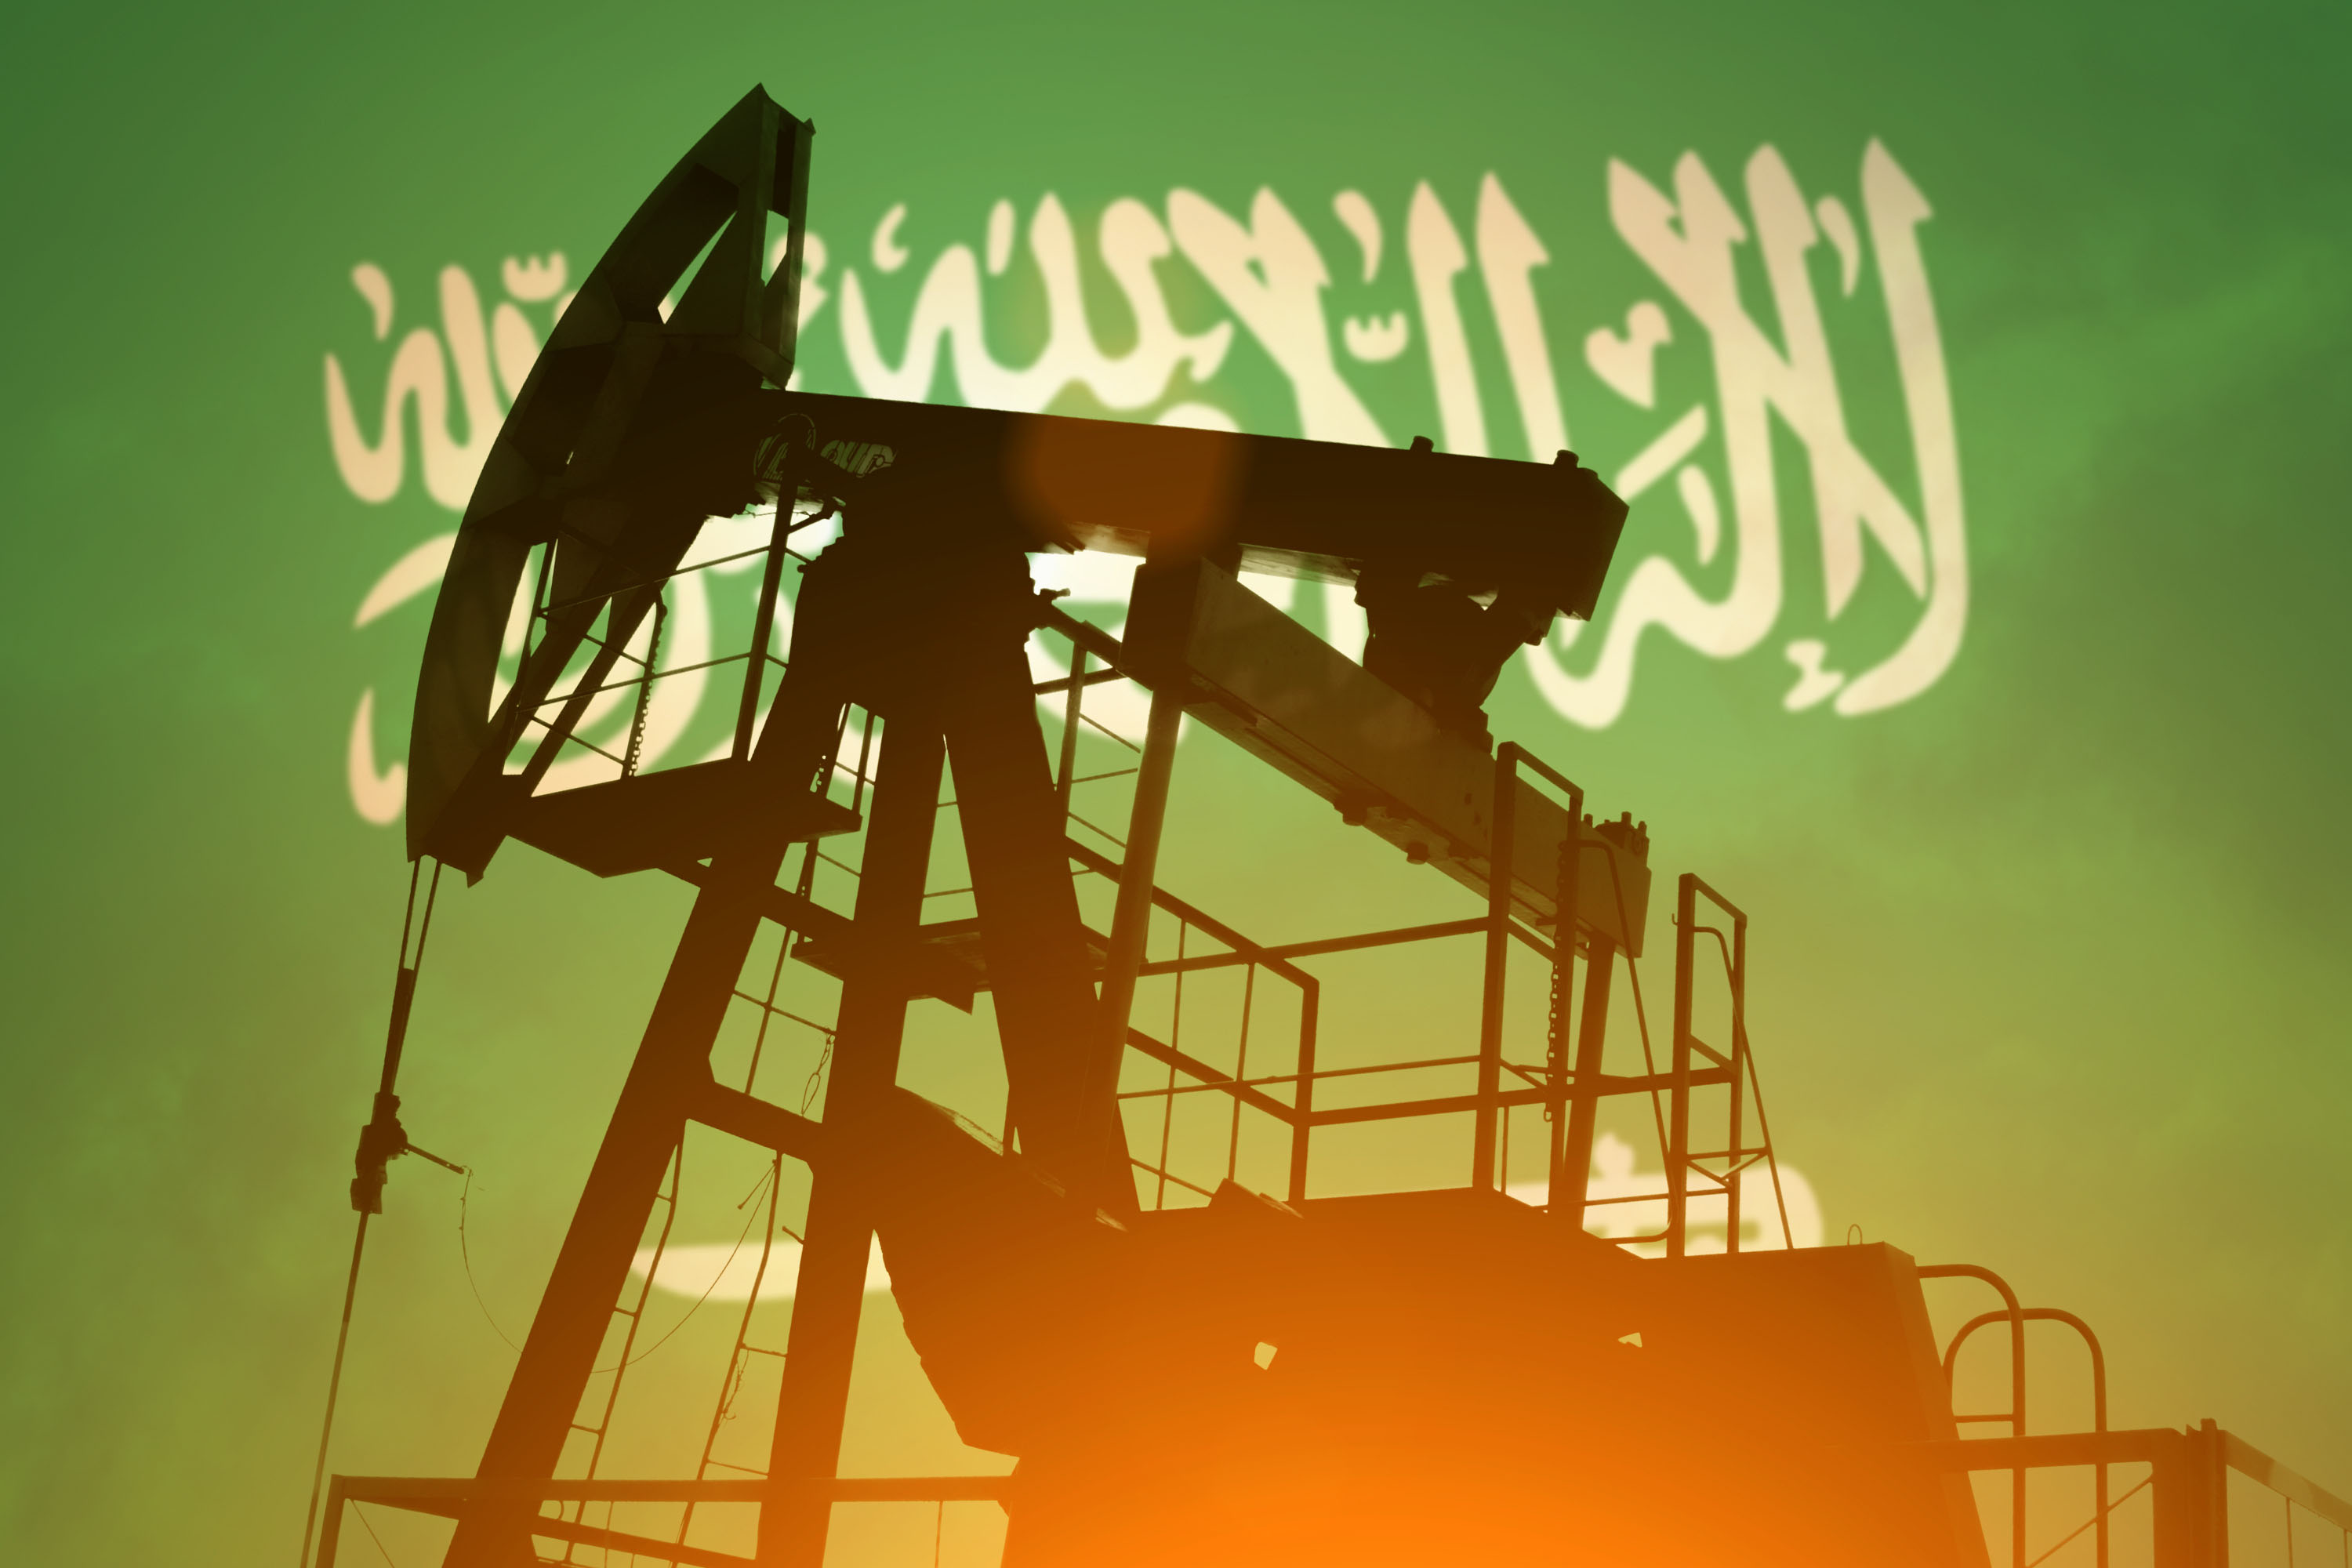 Ölpreise geben nach Schockanstieg etwas nach